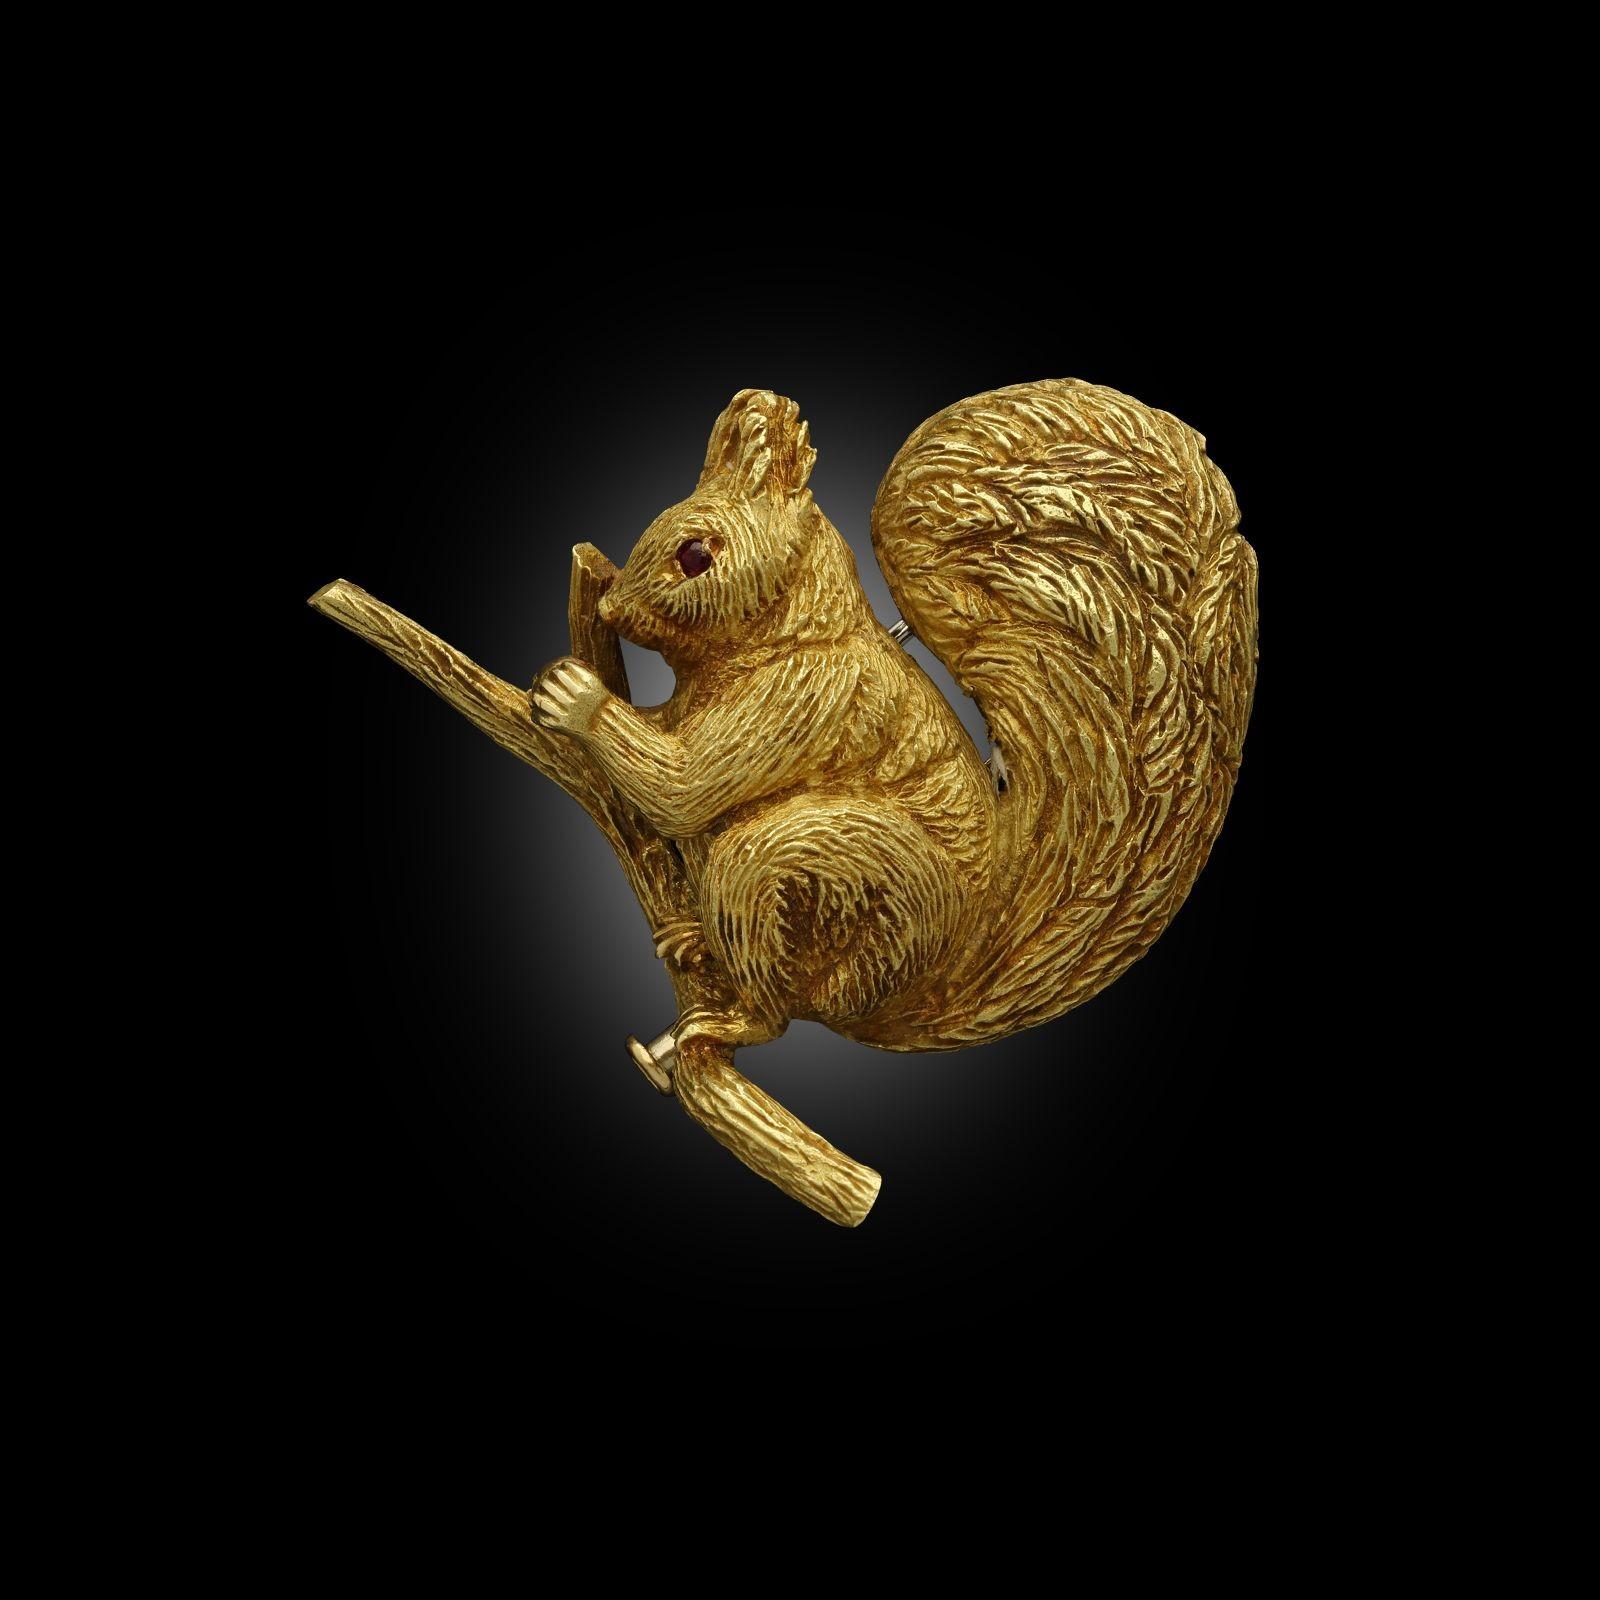 Die dreidimensionale Brosche ist in 18-karätigem Gelbgold fein modelliert und zeigt ein Eichhörnchen, das auf einem Ast sitzt und eine Nuss zwischen den Pfoten hält. Der Körper und der große aufrechte Schwanz sind sorgfältig strukturiert, um das